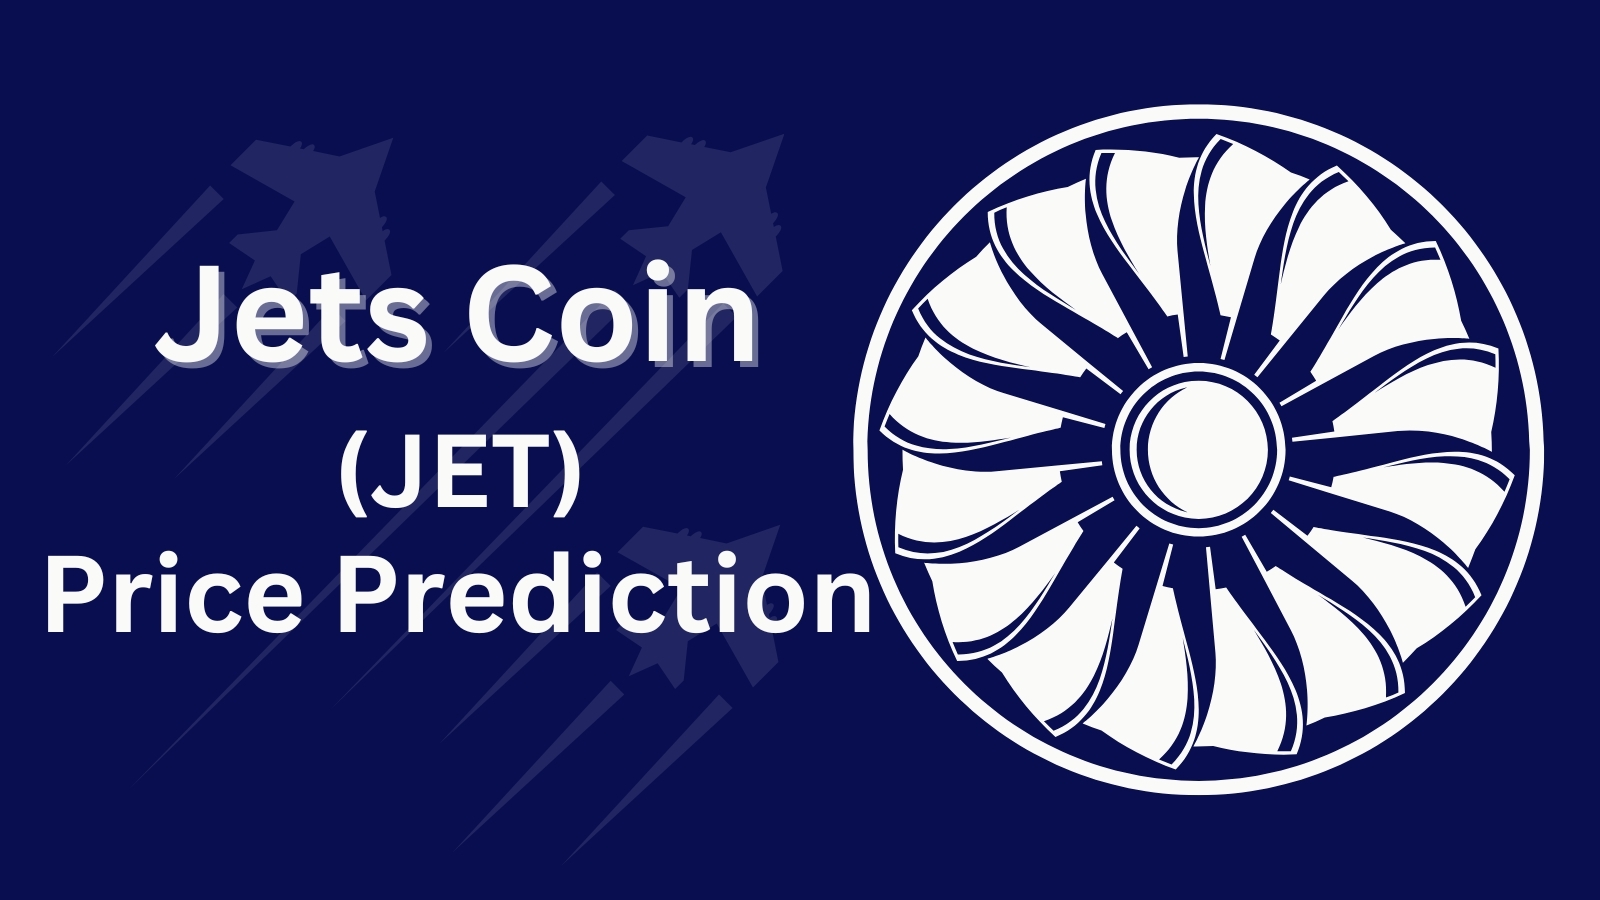 Jets Coin (JET) Price Prediction